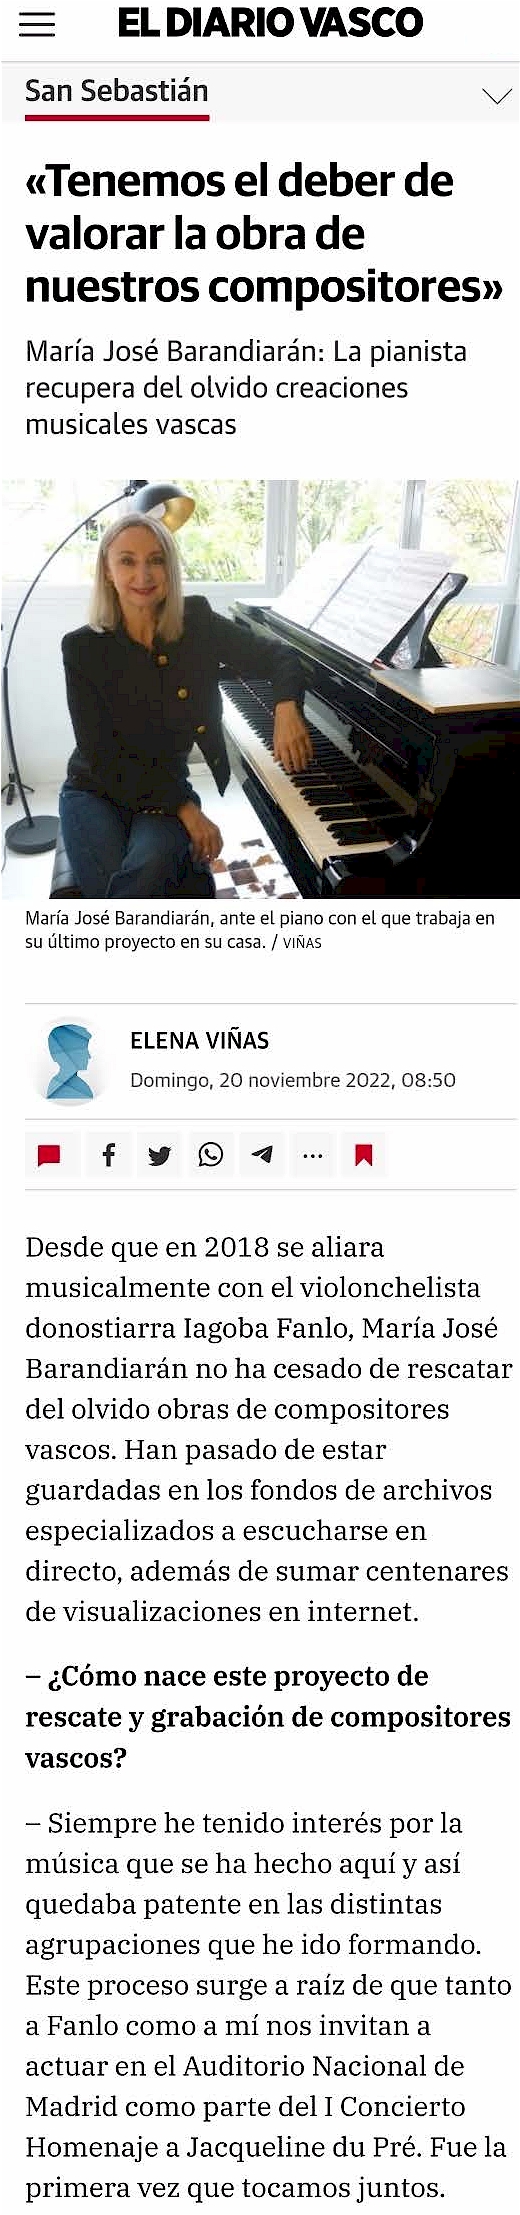 Entrevista María Barandiarán - Dirario Vasco, 2022 - Parte 1